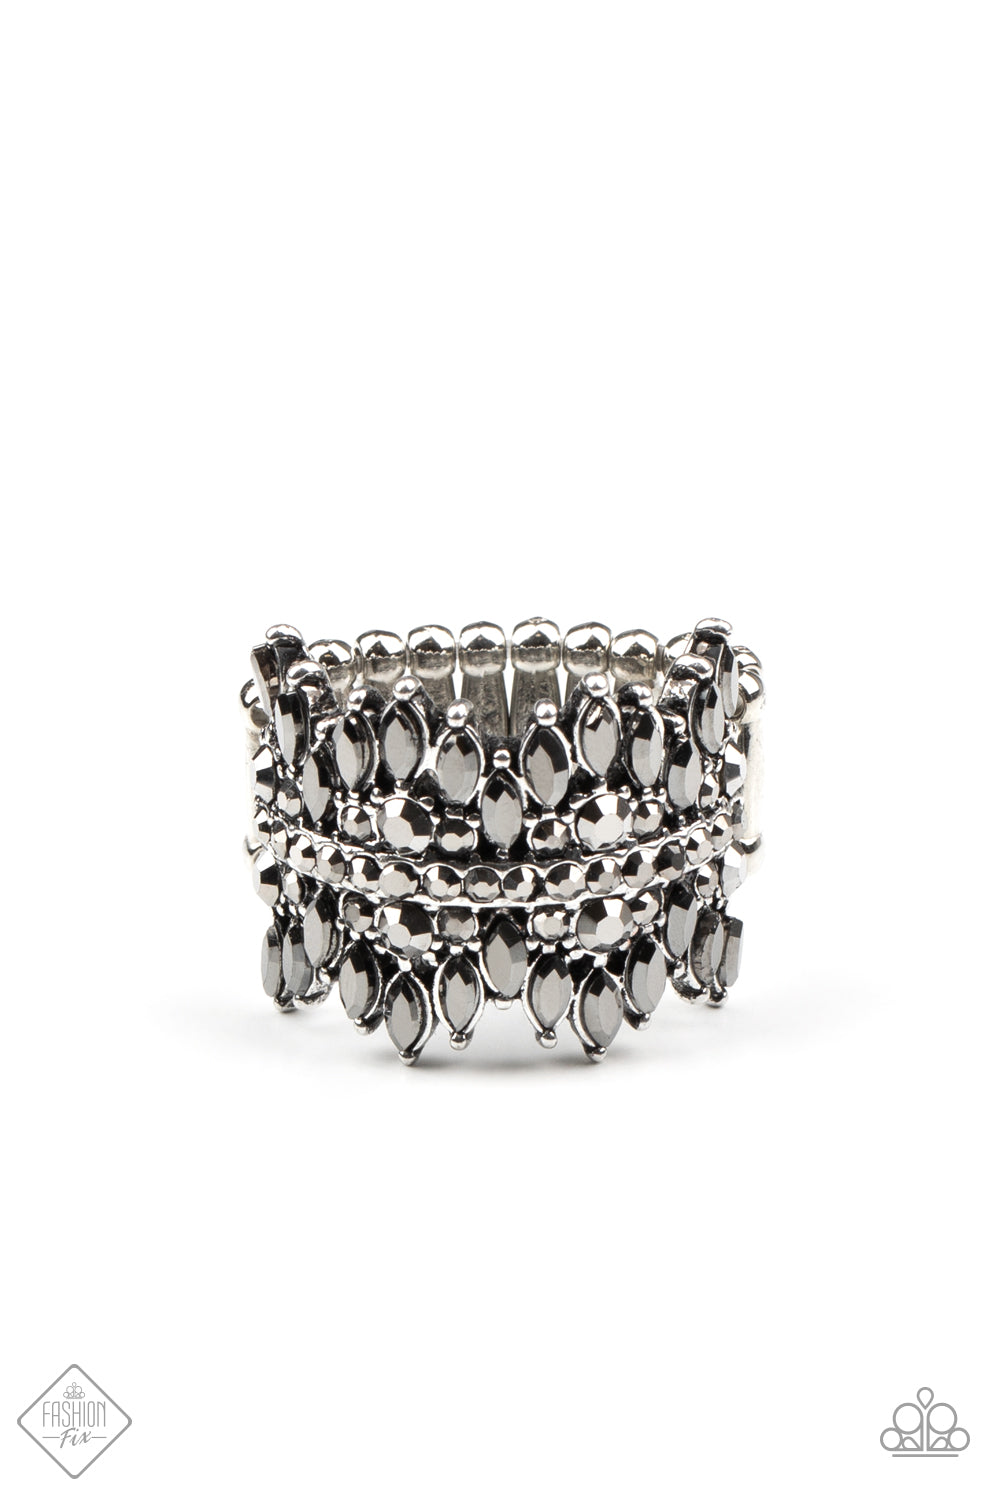 Paparazzi Ring ~ Cosmic Confetti -Fashion Fix Oct2020 - Silver ...